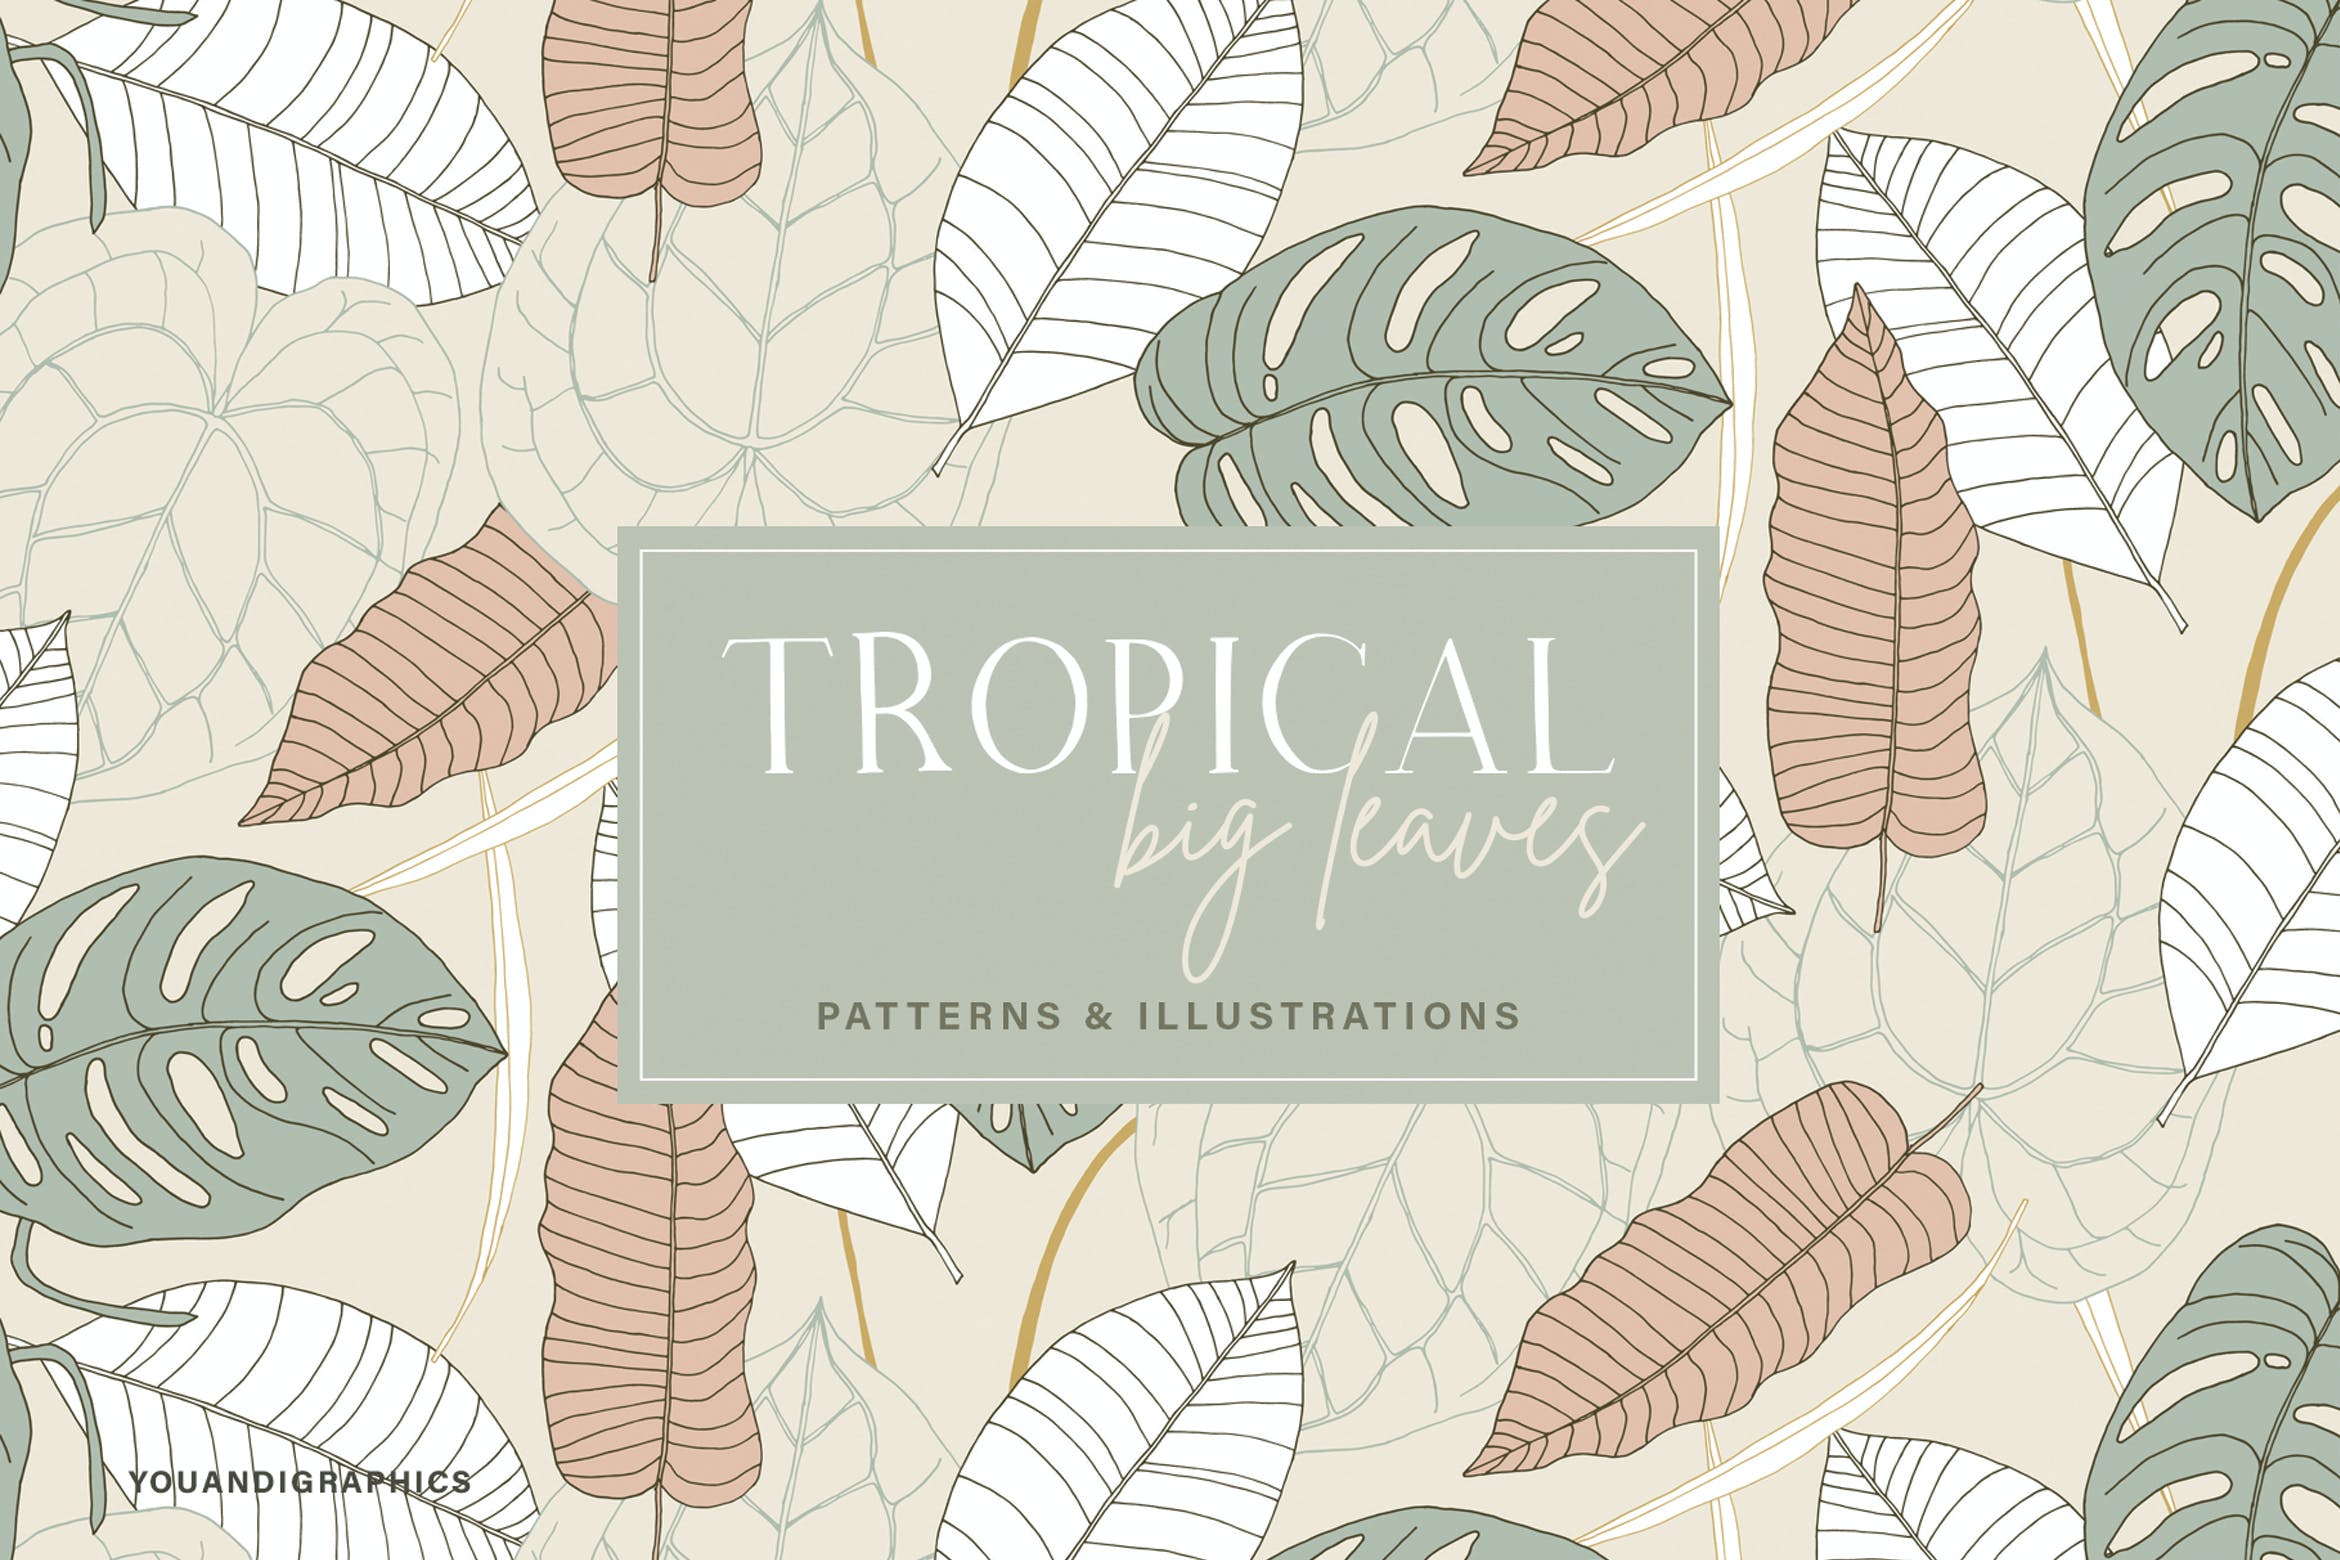 植物叶子热带图案素材 Big Leaves – Tropical Patterns 图片素材 第1张